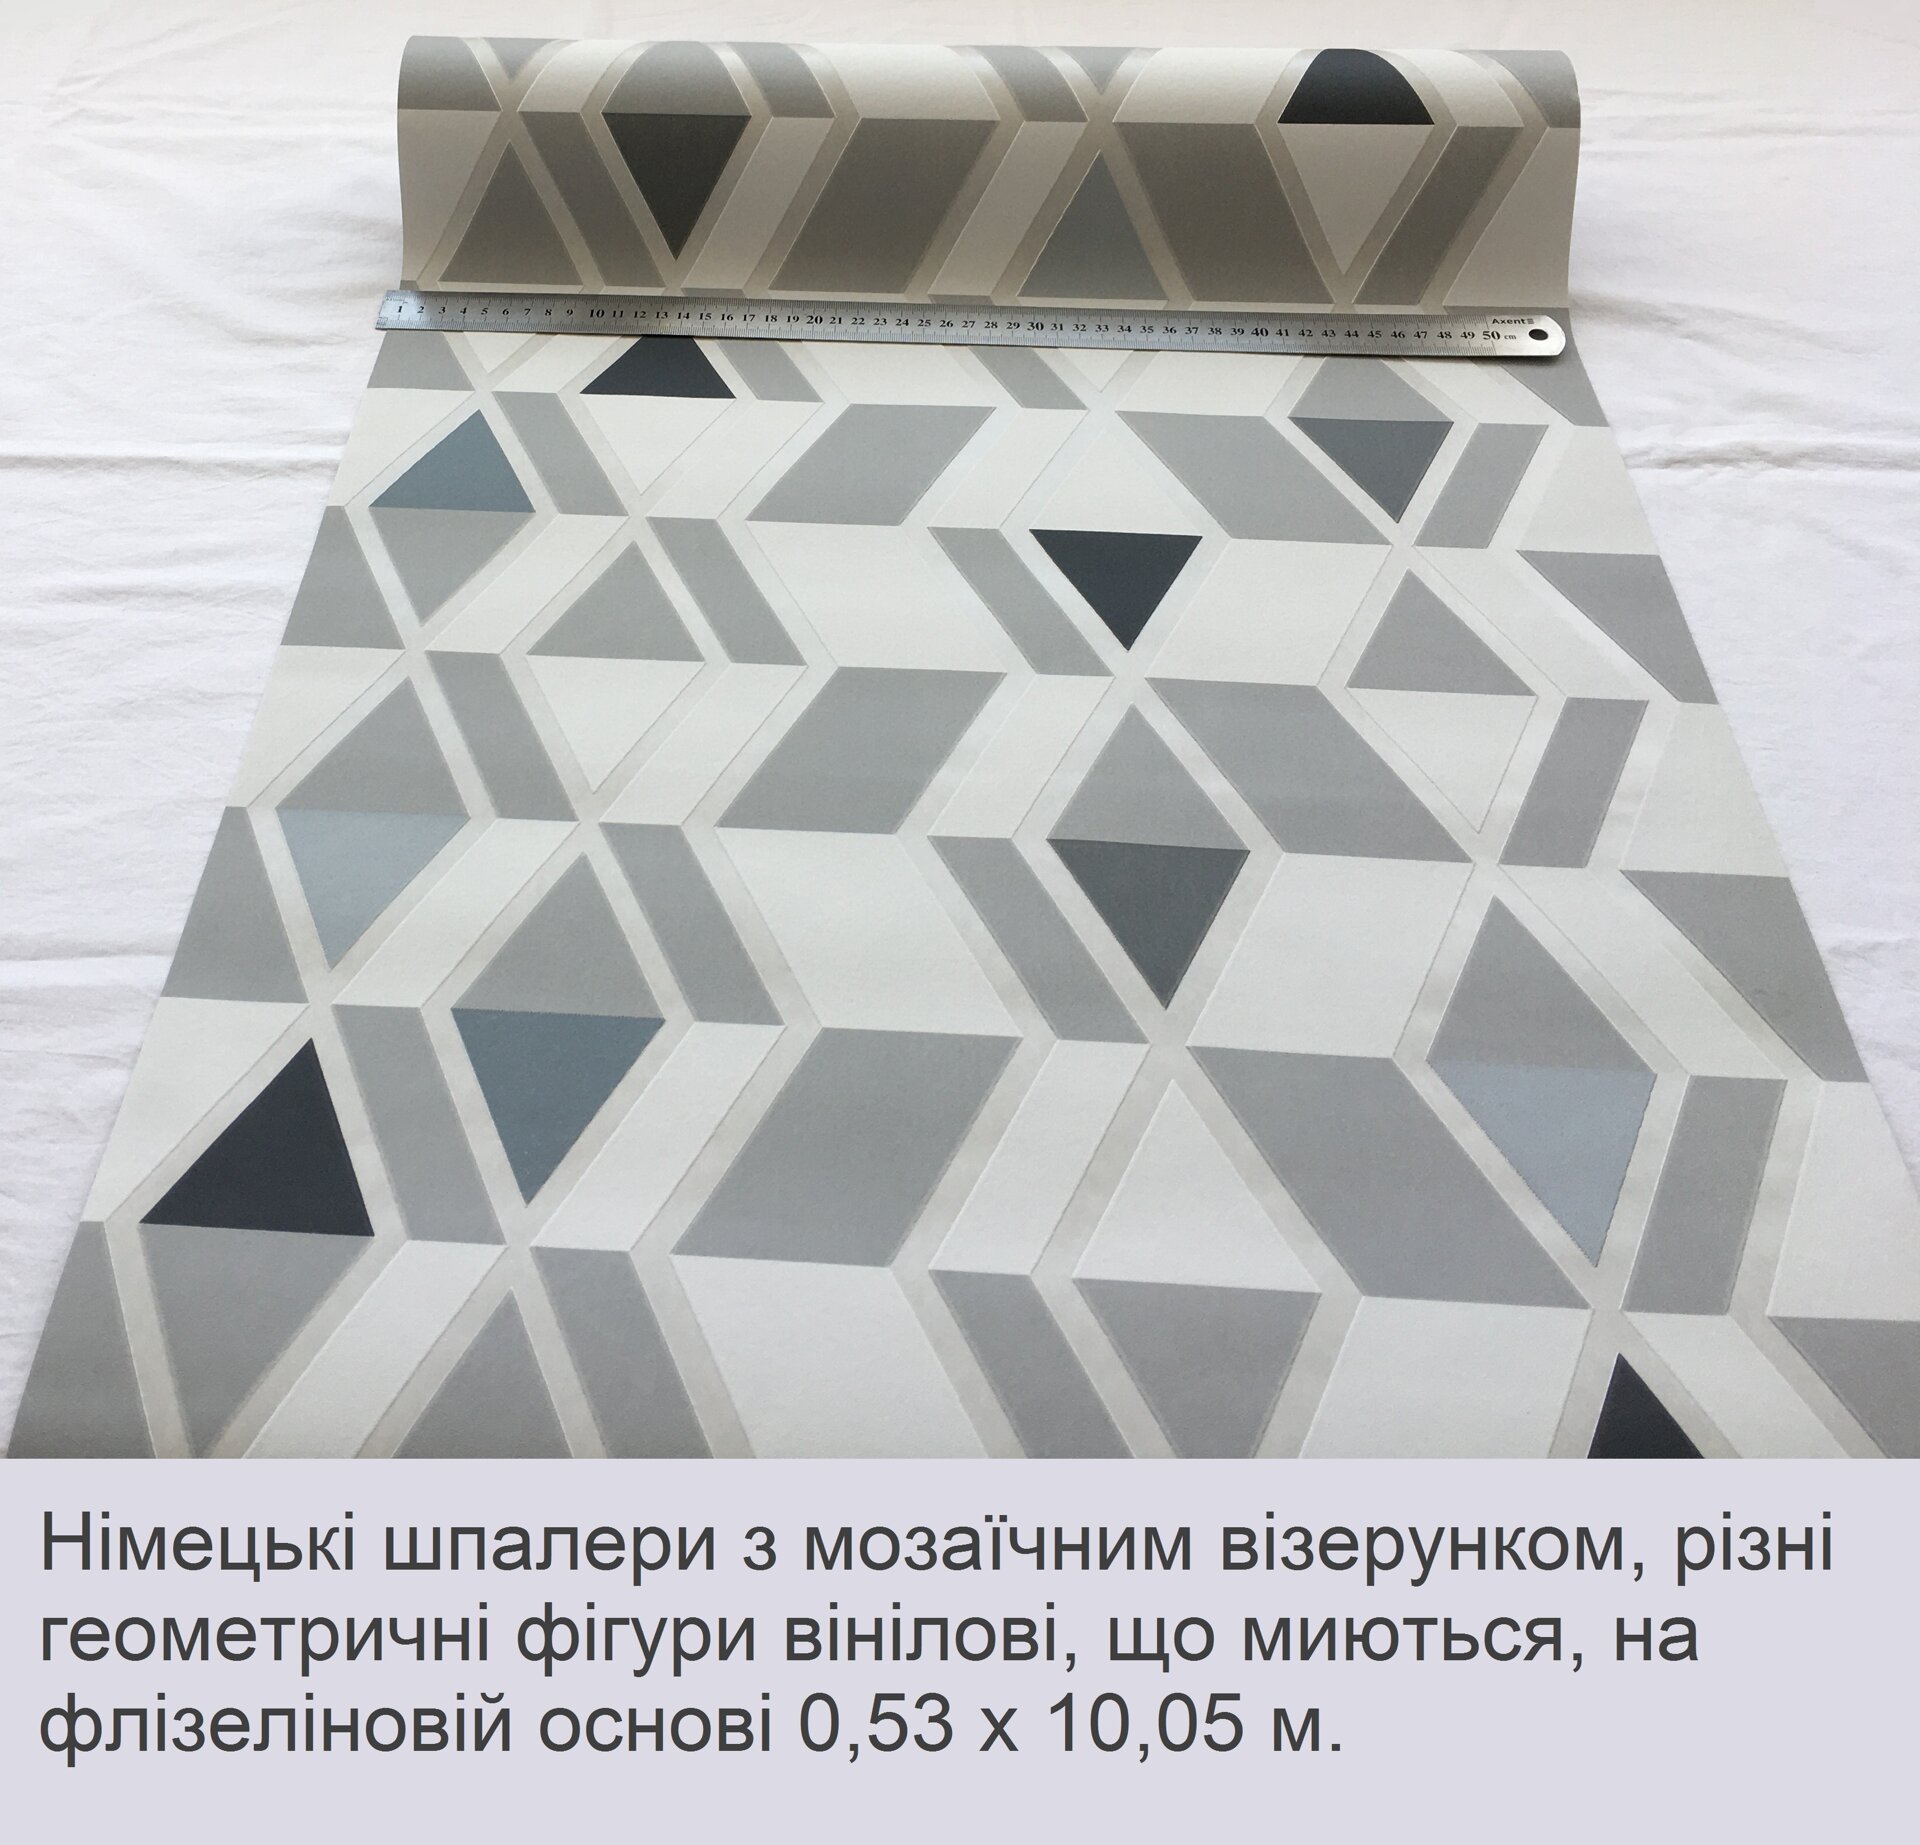 Стильні німецькі шпалери, з геометричним та мозаїчним візерунком, у вигляді трикутників прямокутників та ромбів, монохром чорного сірого та білого кольору